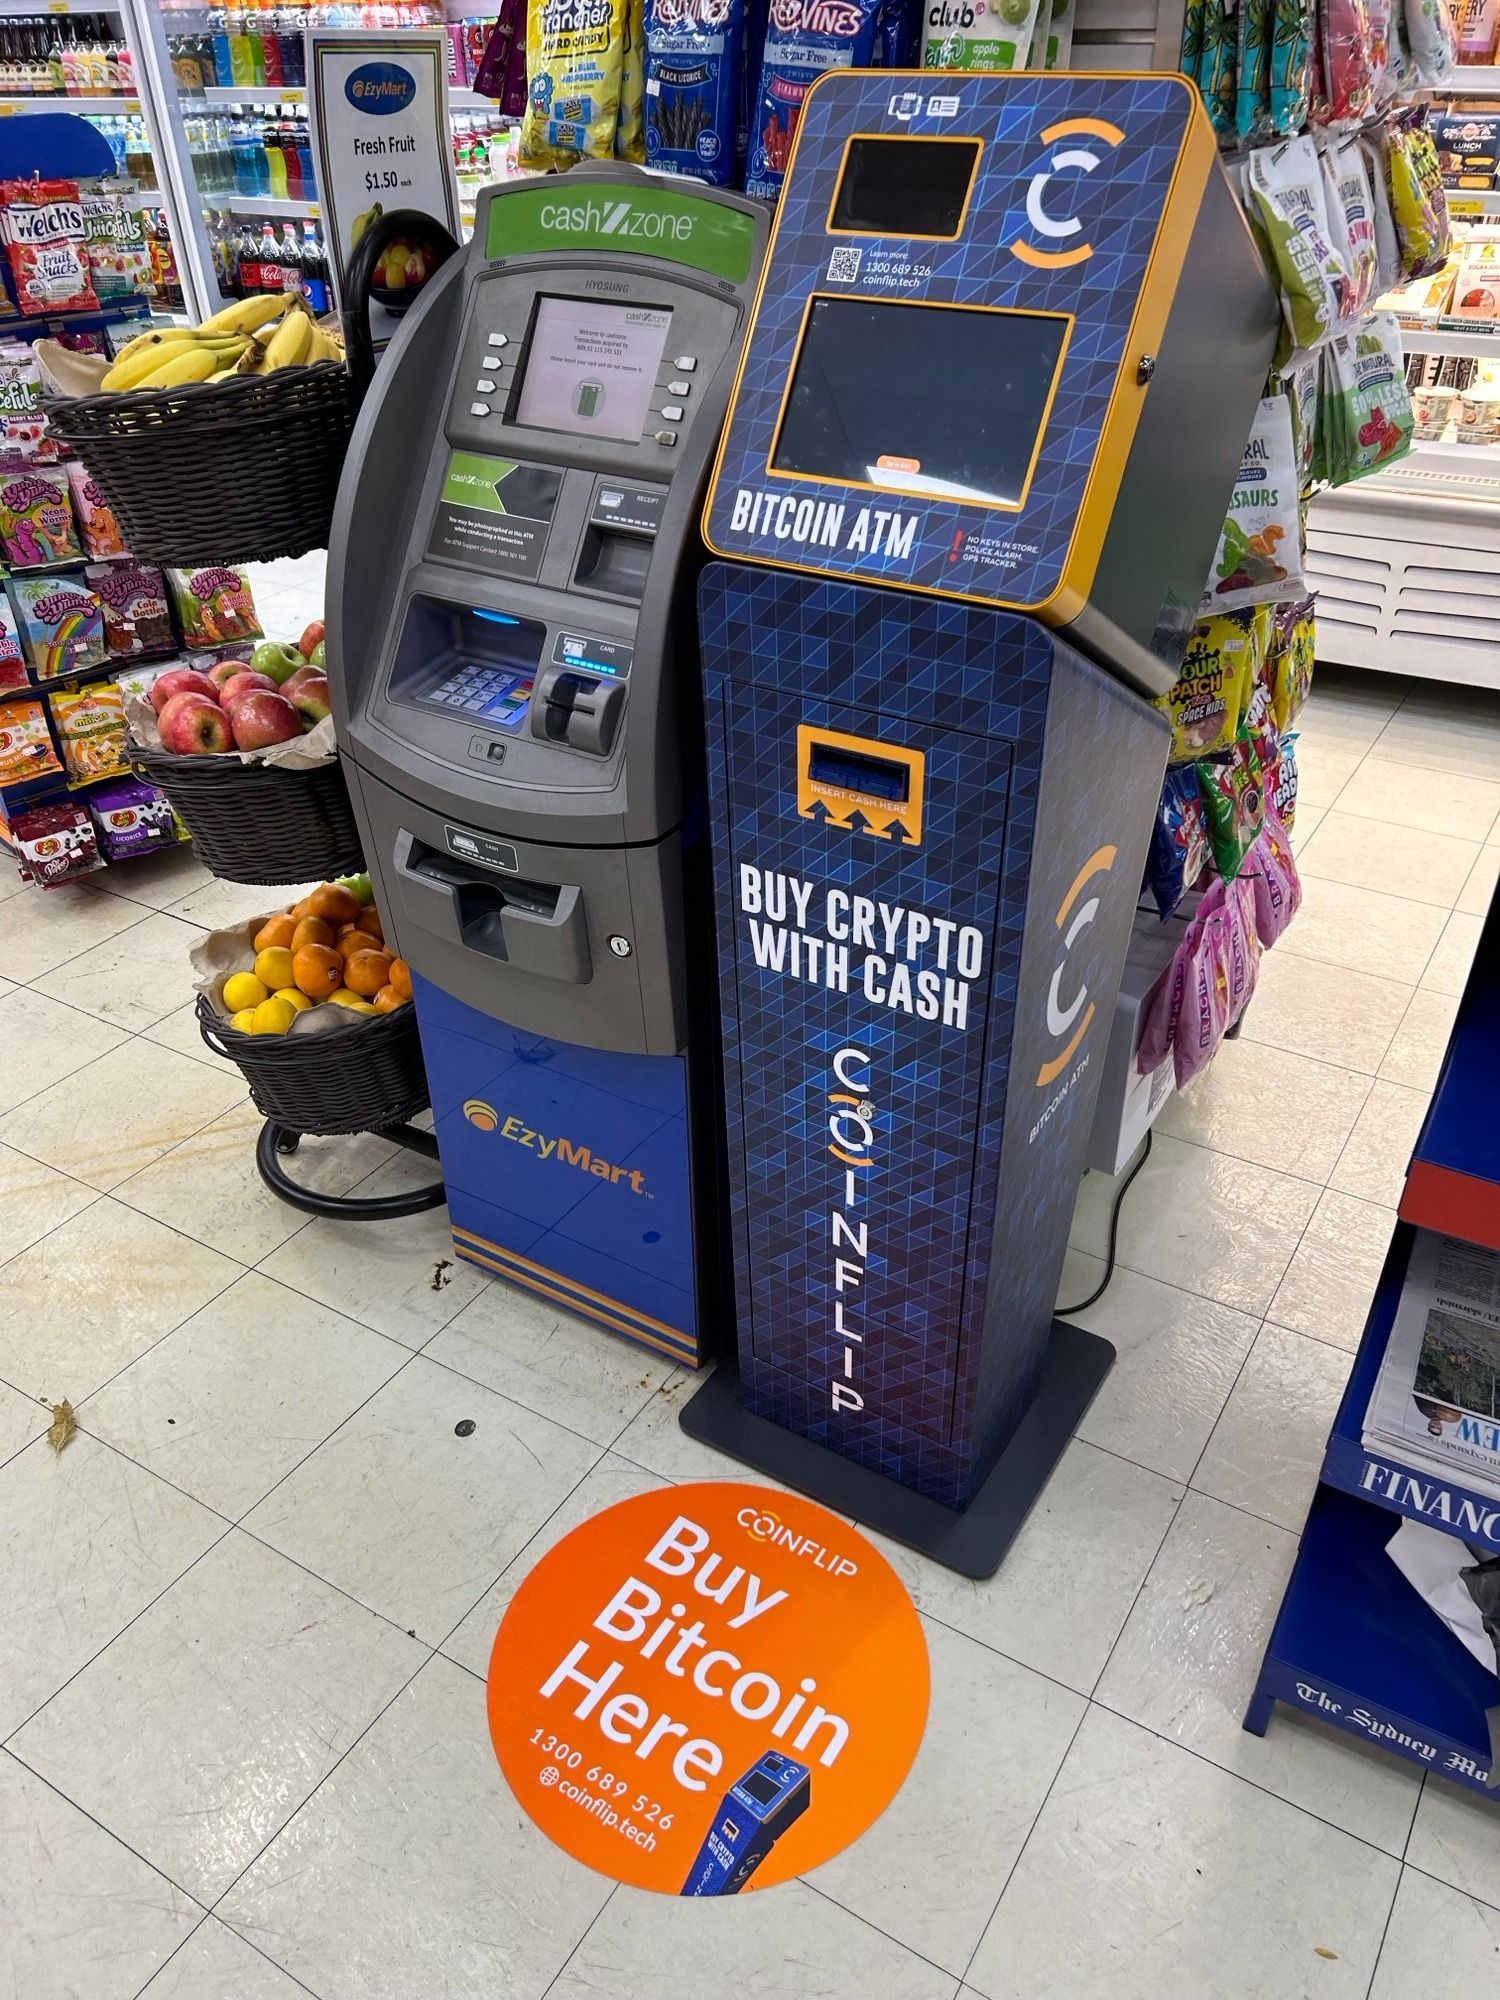 CoinFlip Bitcoin ATM - EzyMart Pitt Street (Sydney) Sydney (13) 0068 9526